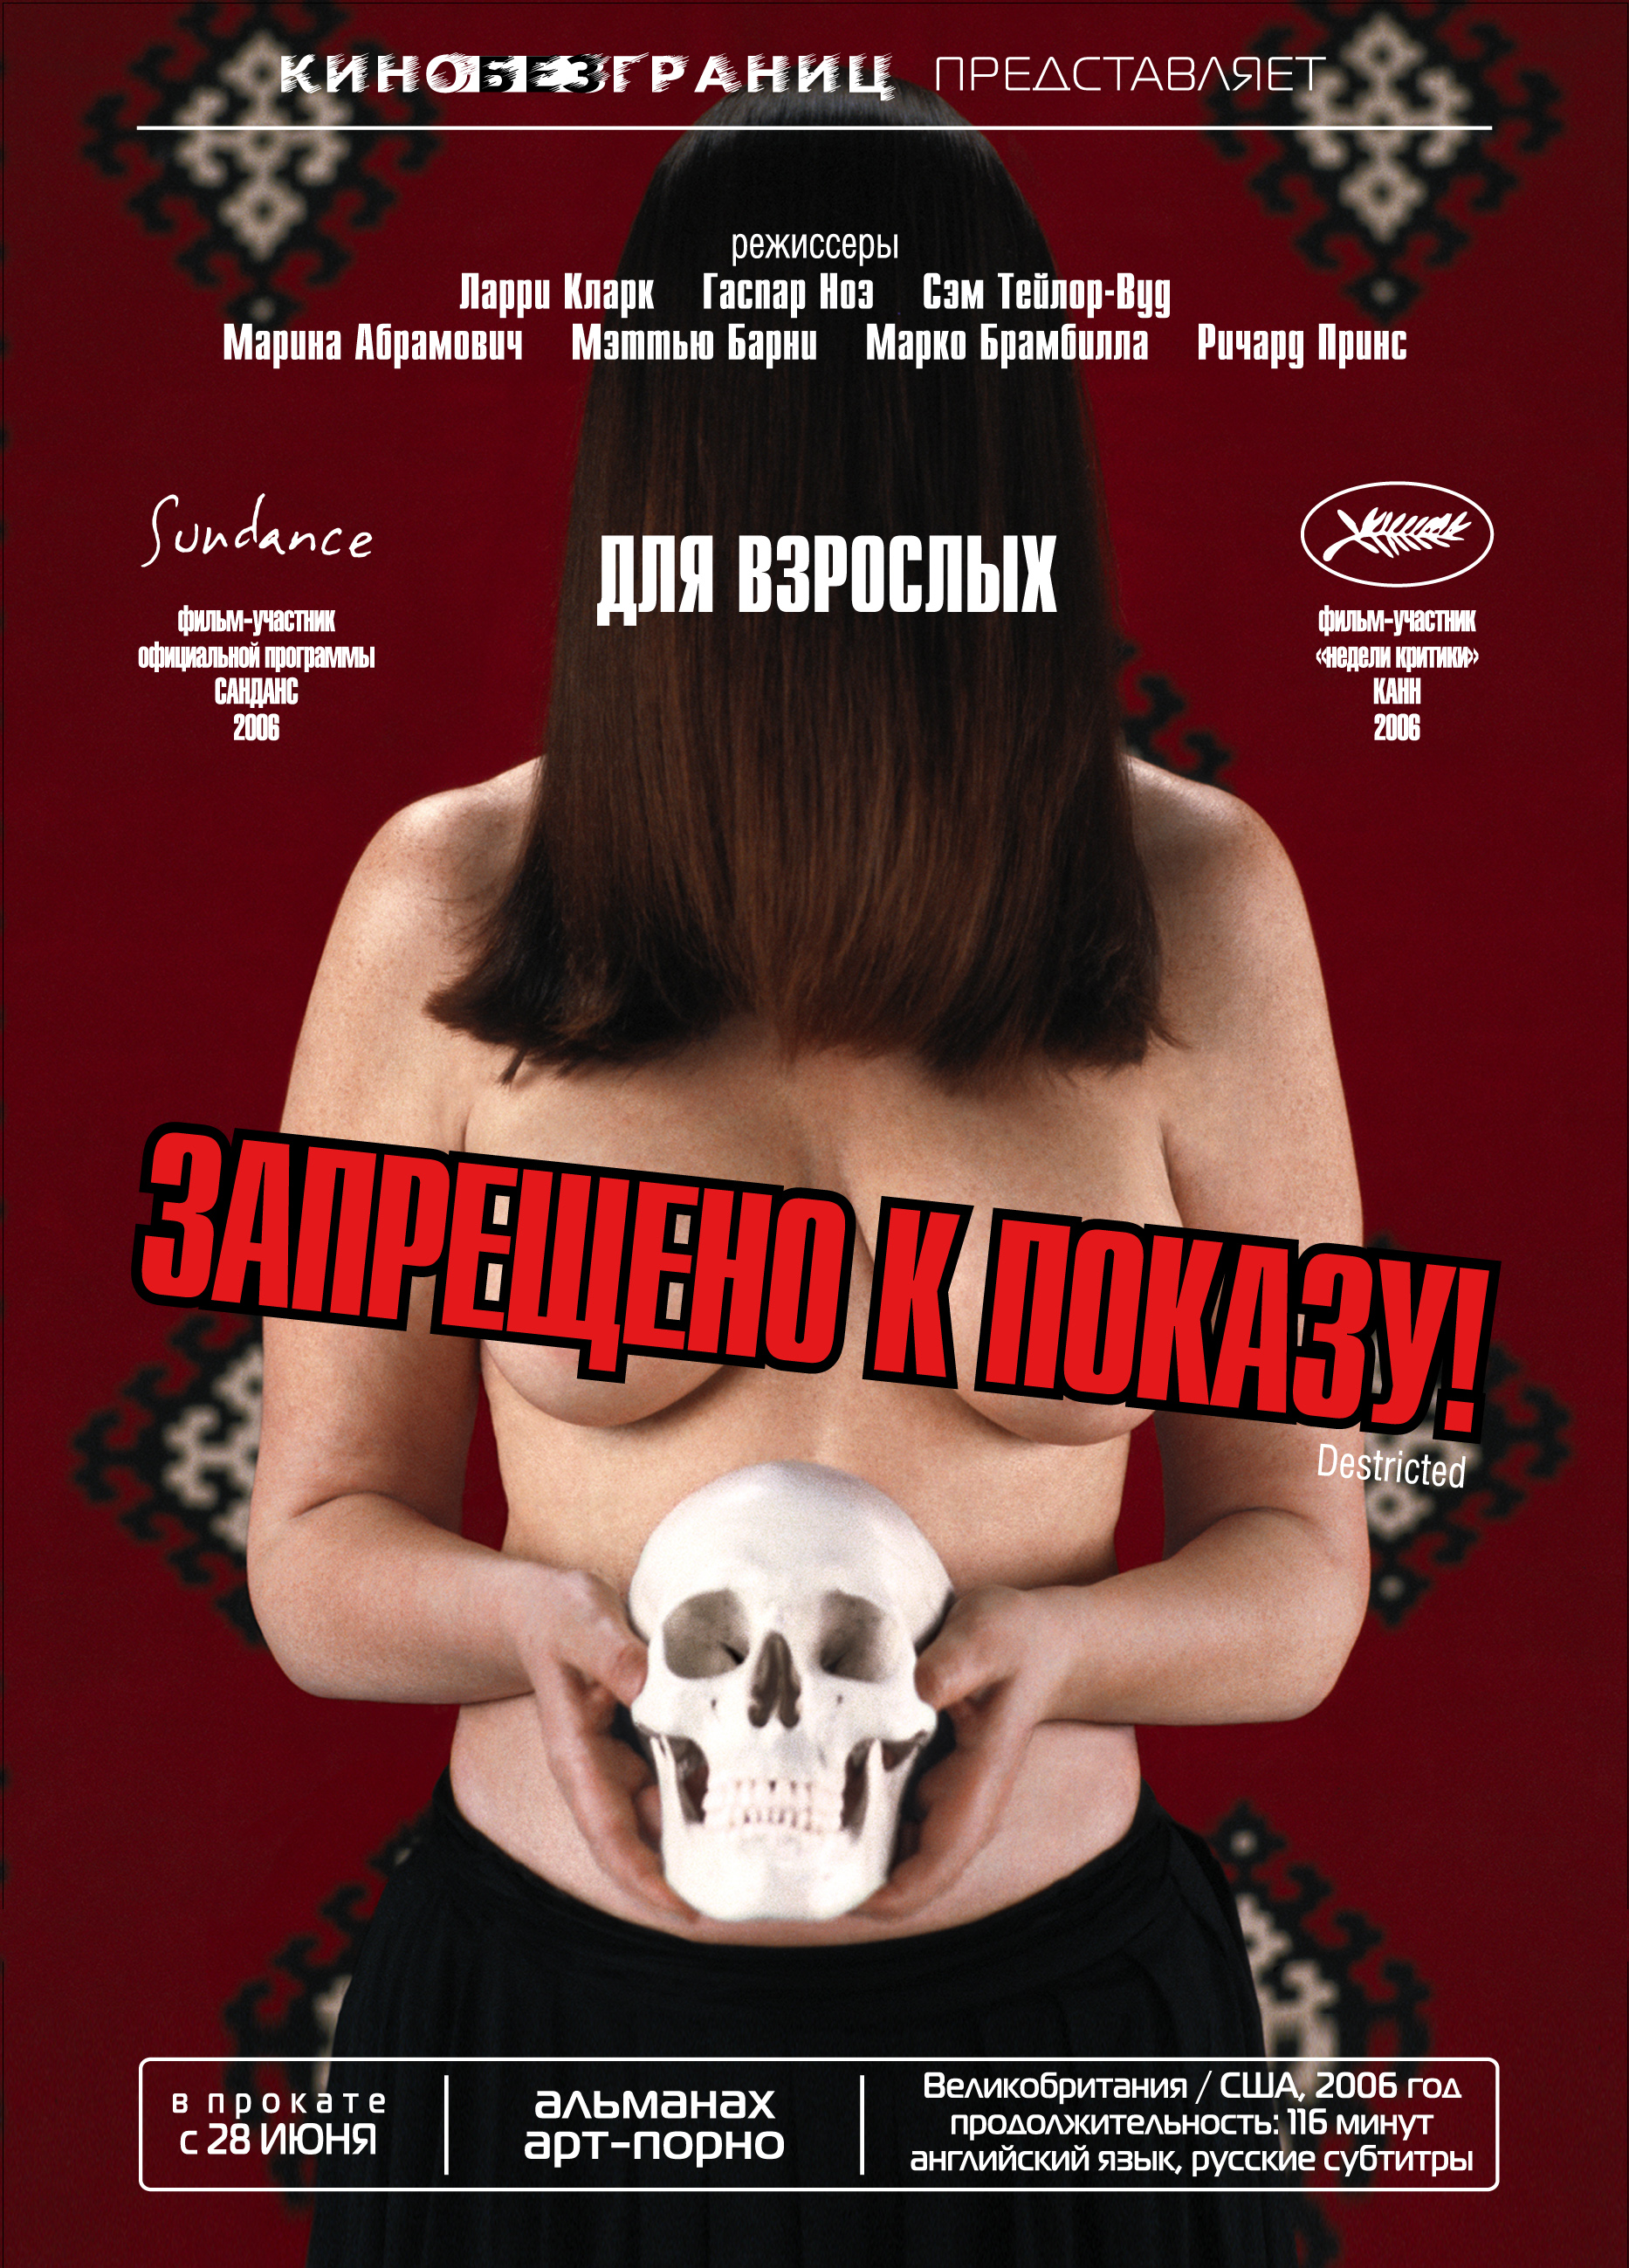 Erotika kino ru